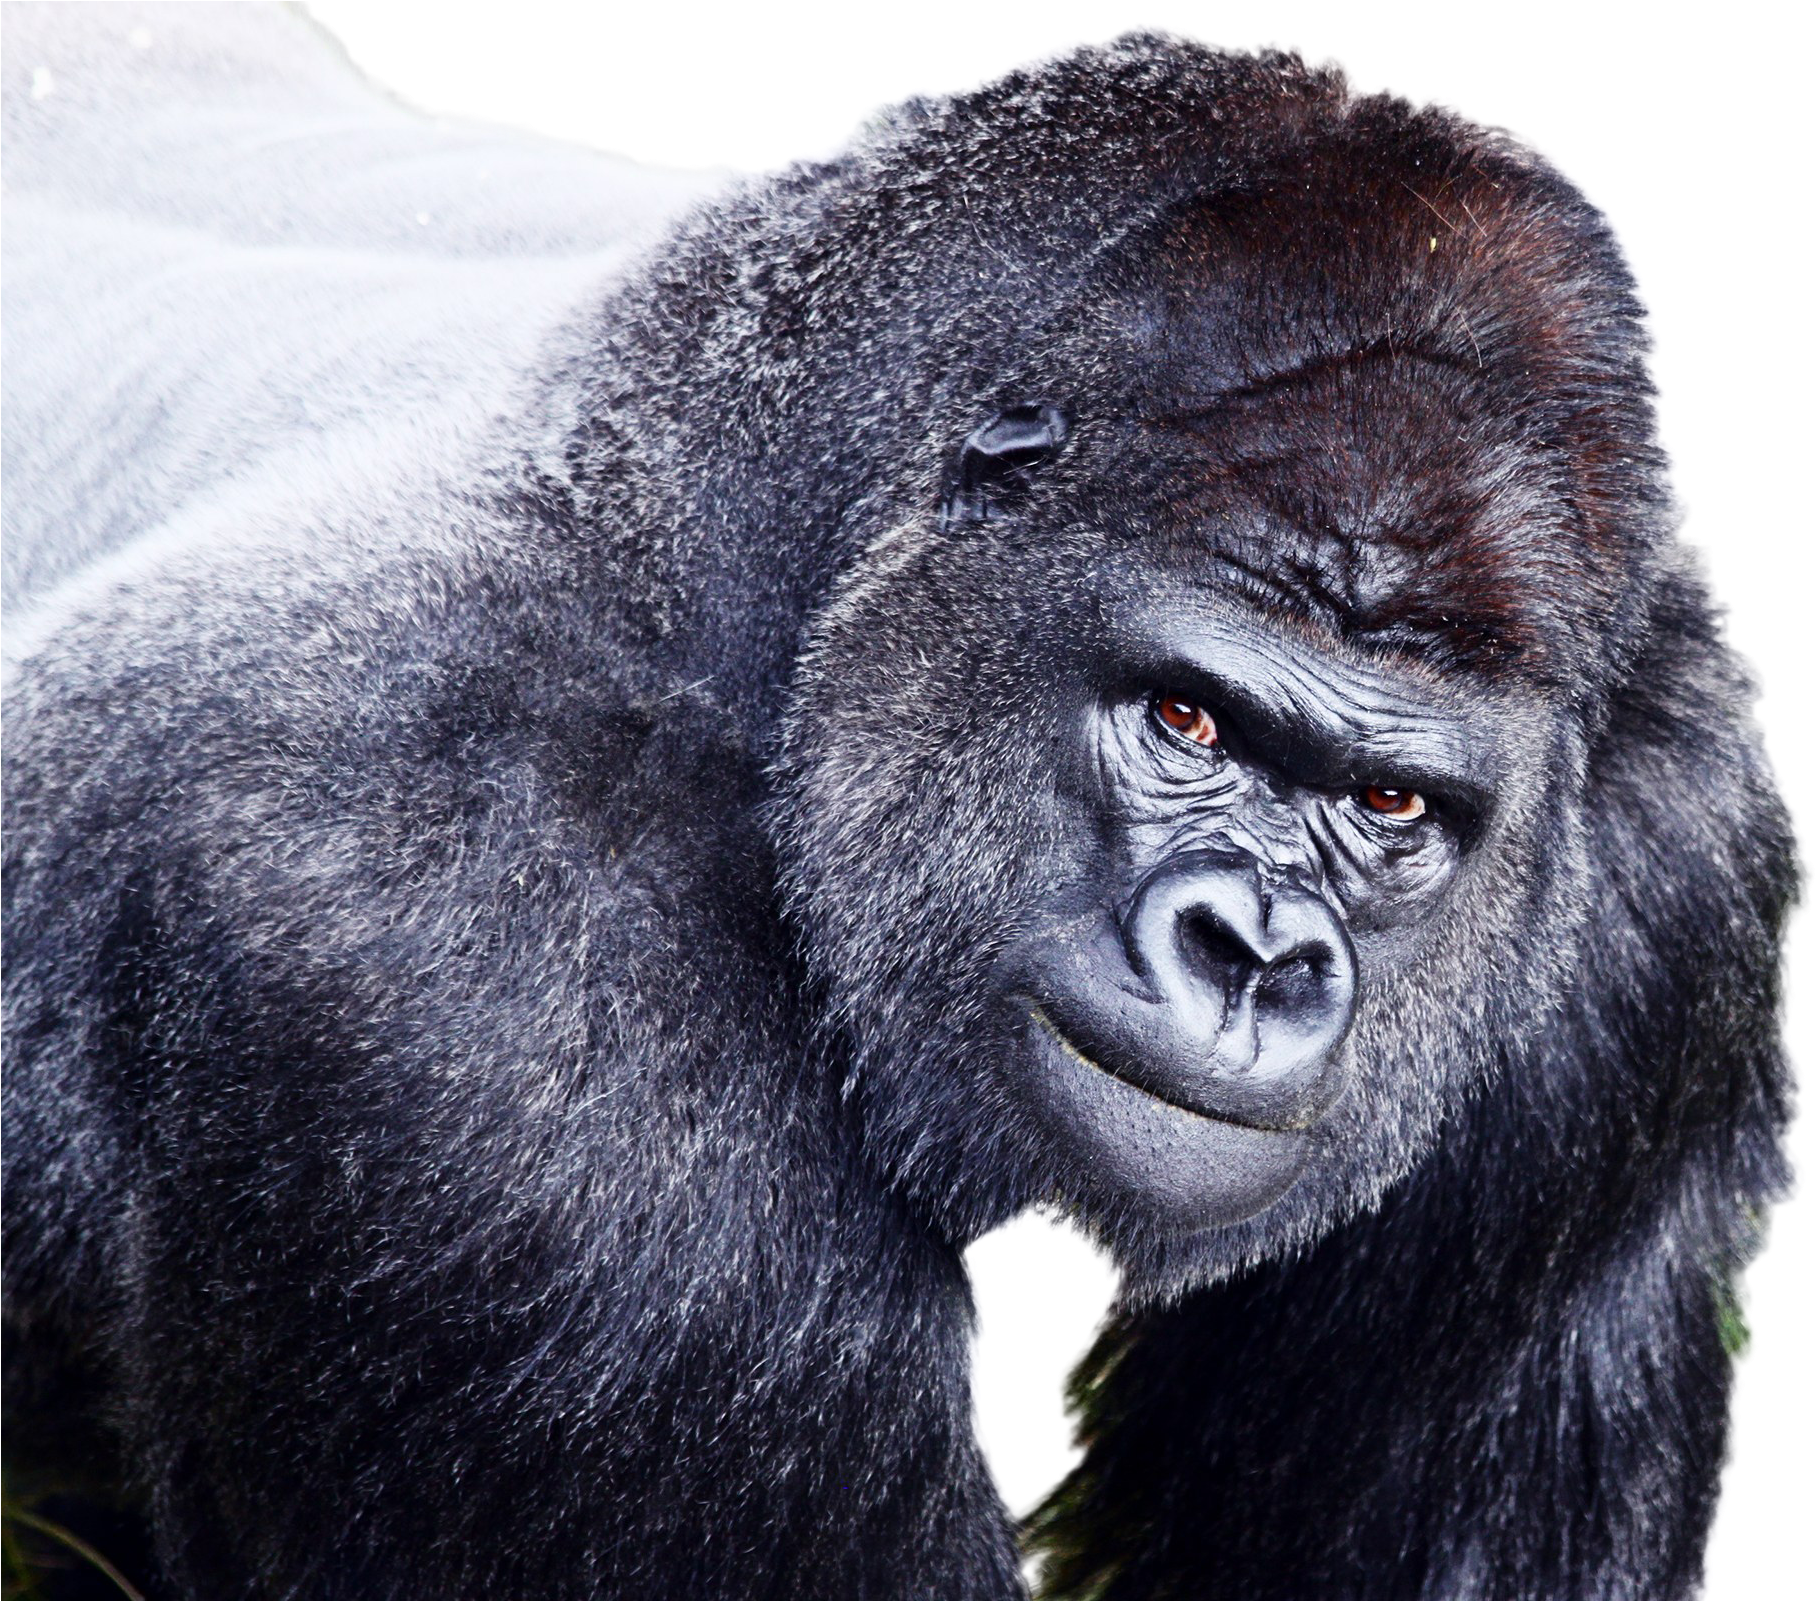 Intense Gorilla Portrait